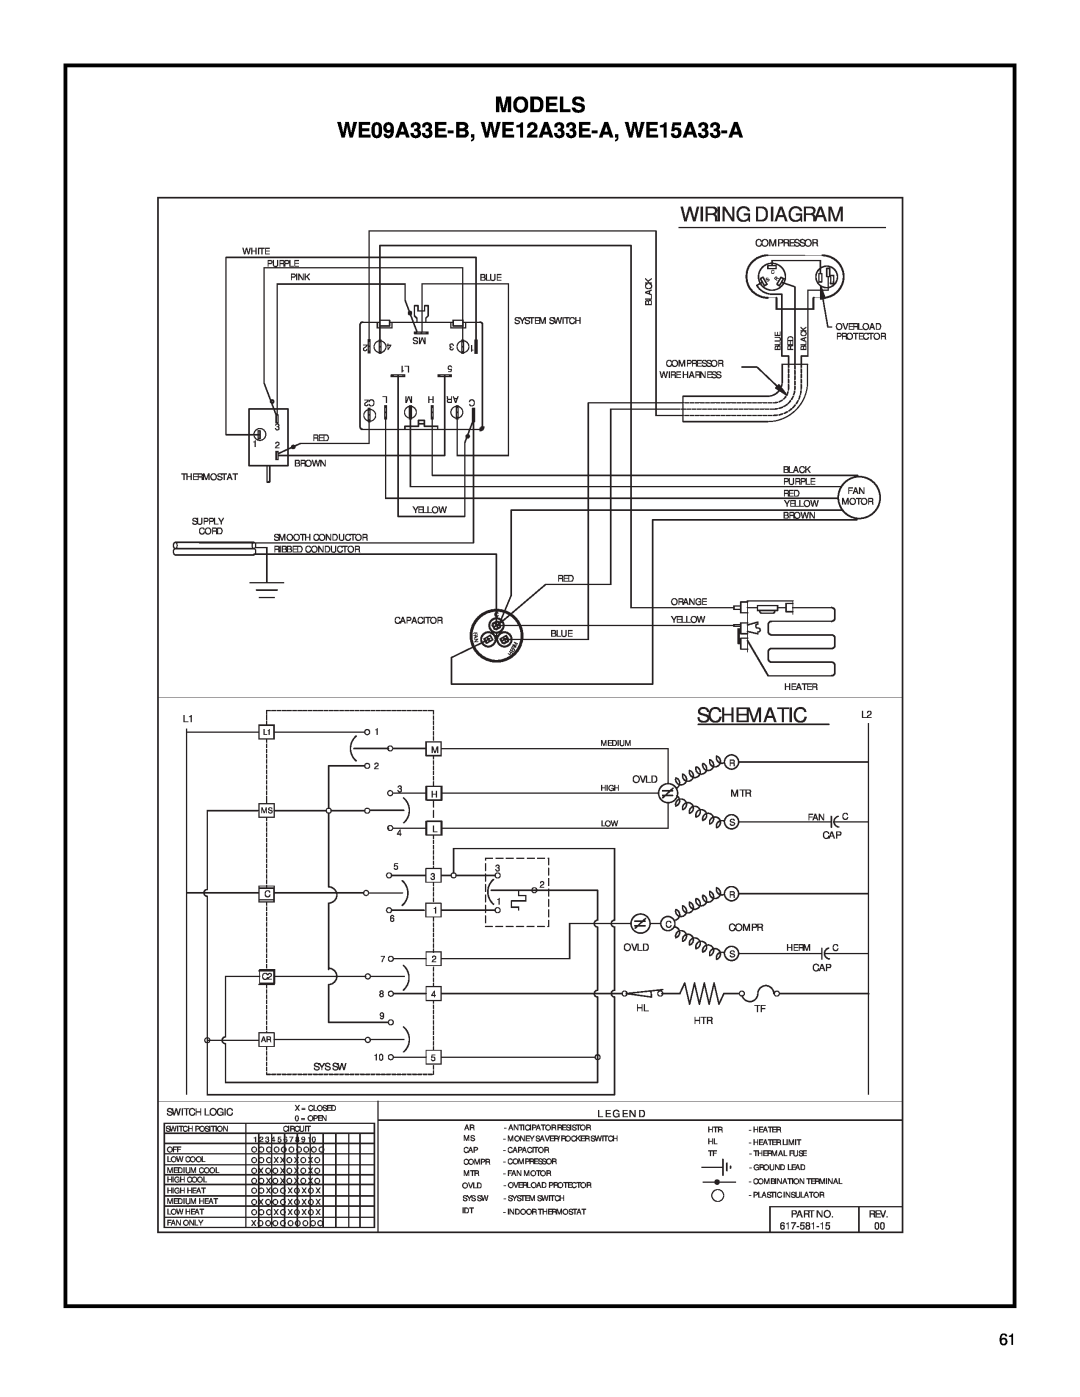 Friedrich 2003 service manual WE09A33E-B, WE12A33E-A, WE15A33-A, Wiring Diagram, Schematic, Models 